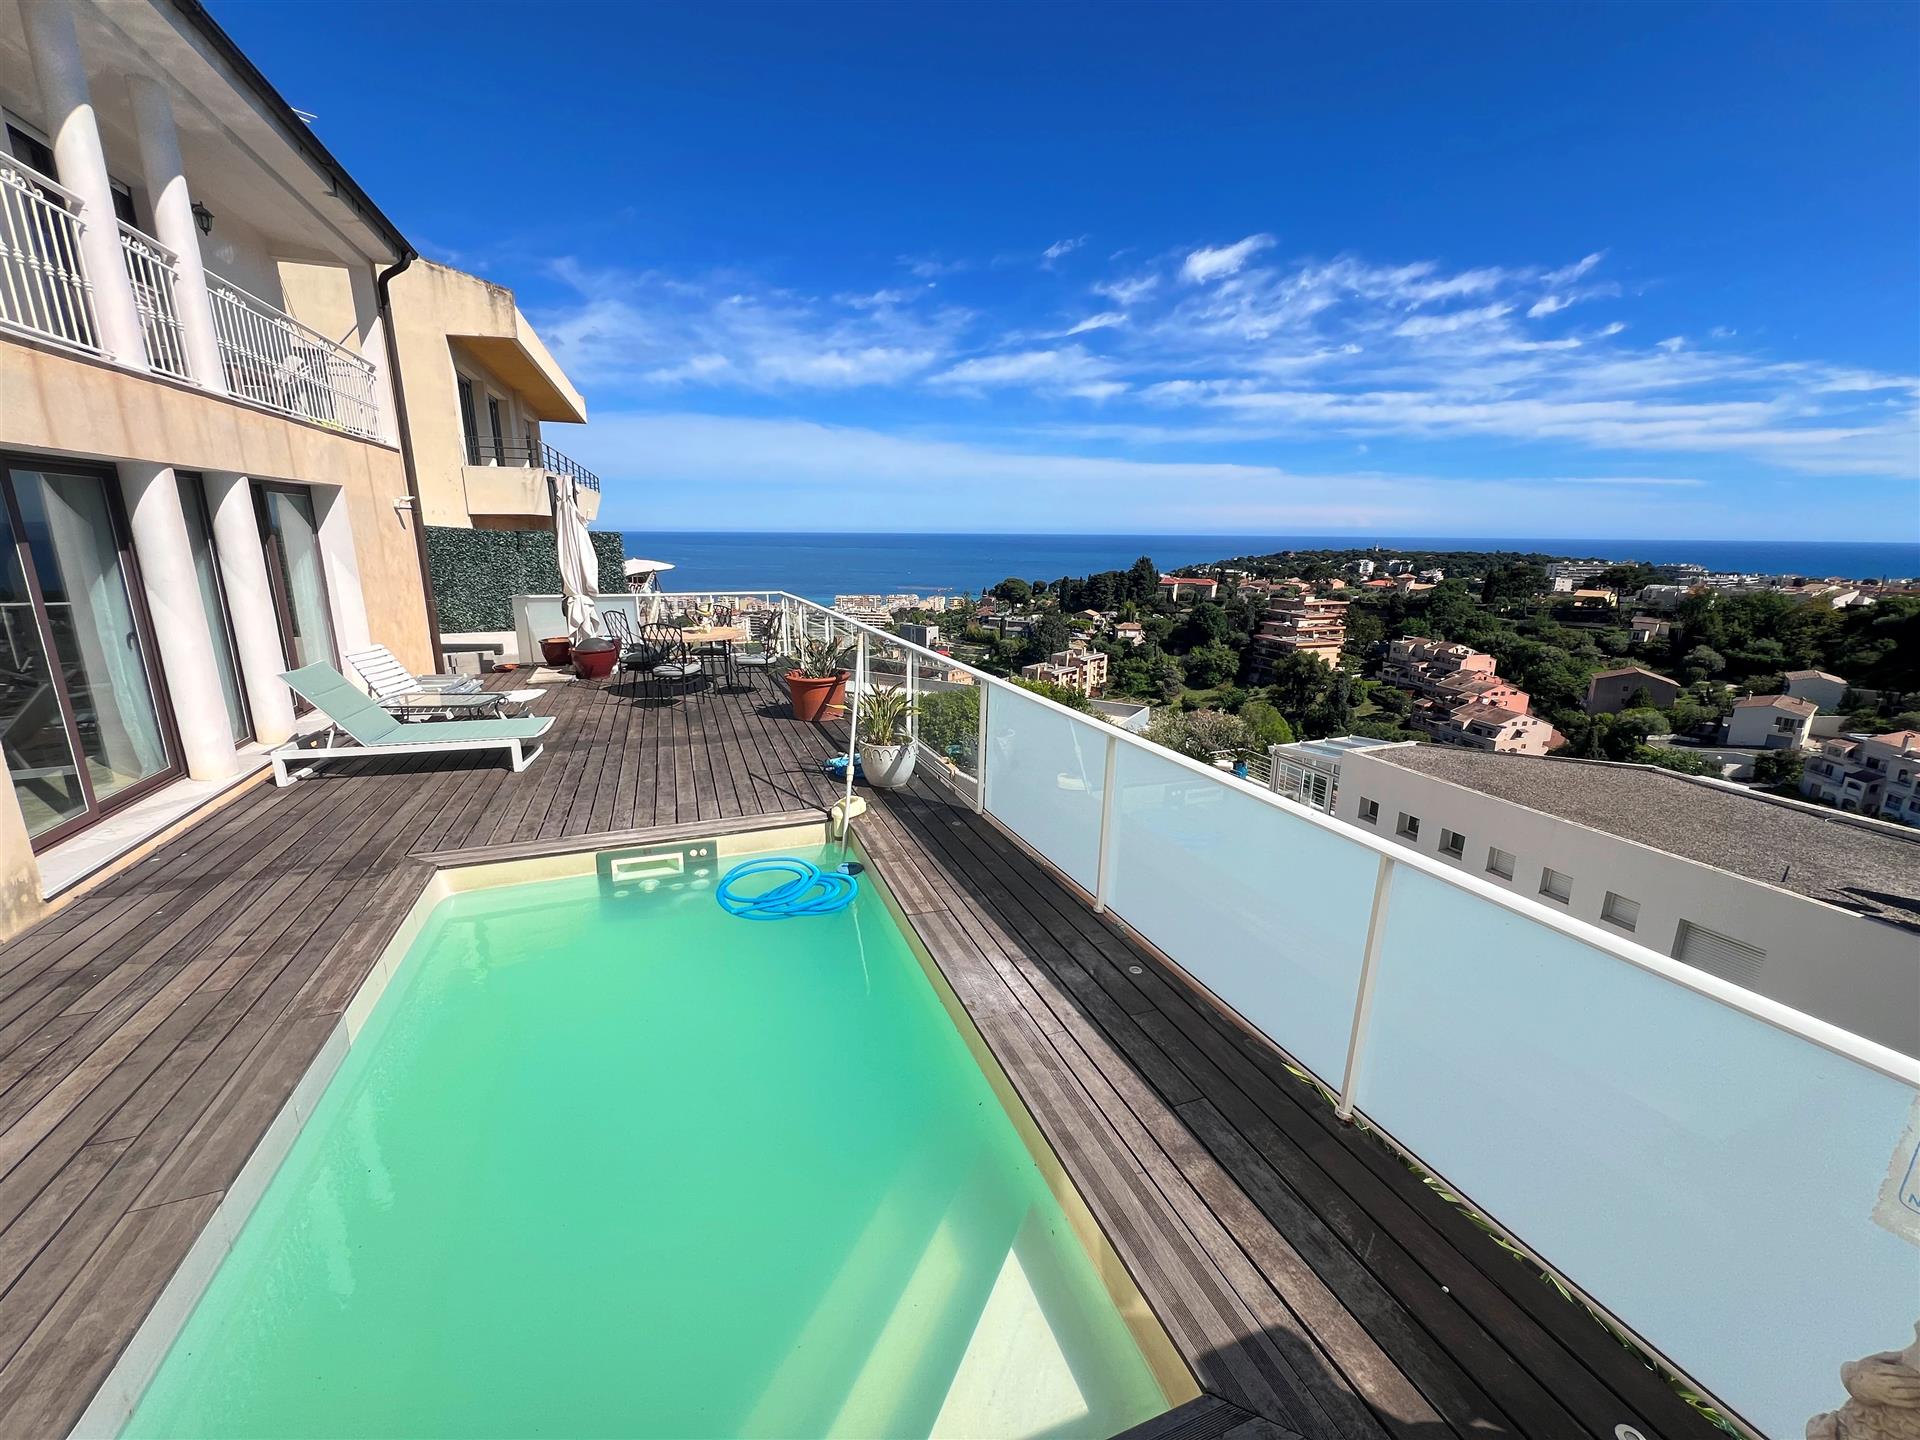 Panoramisch uitzicht op zee, Villa in de buurt van Monaco